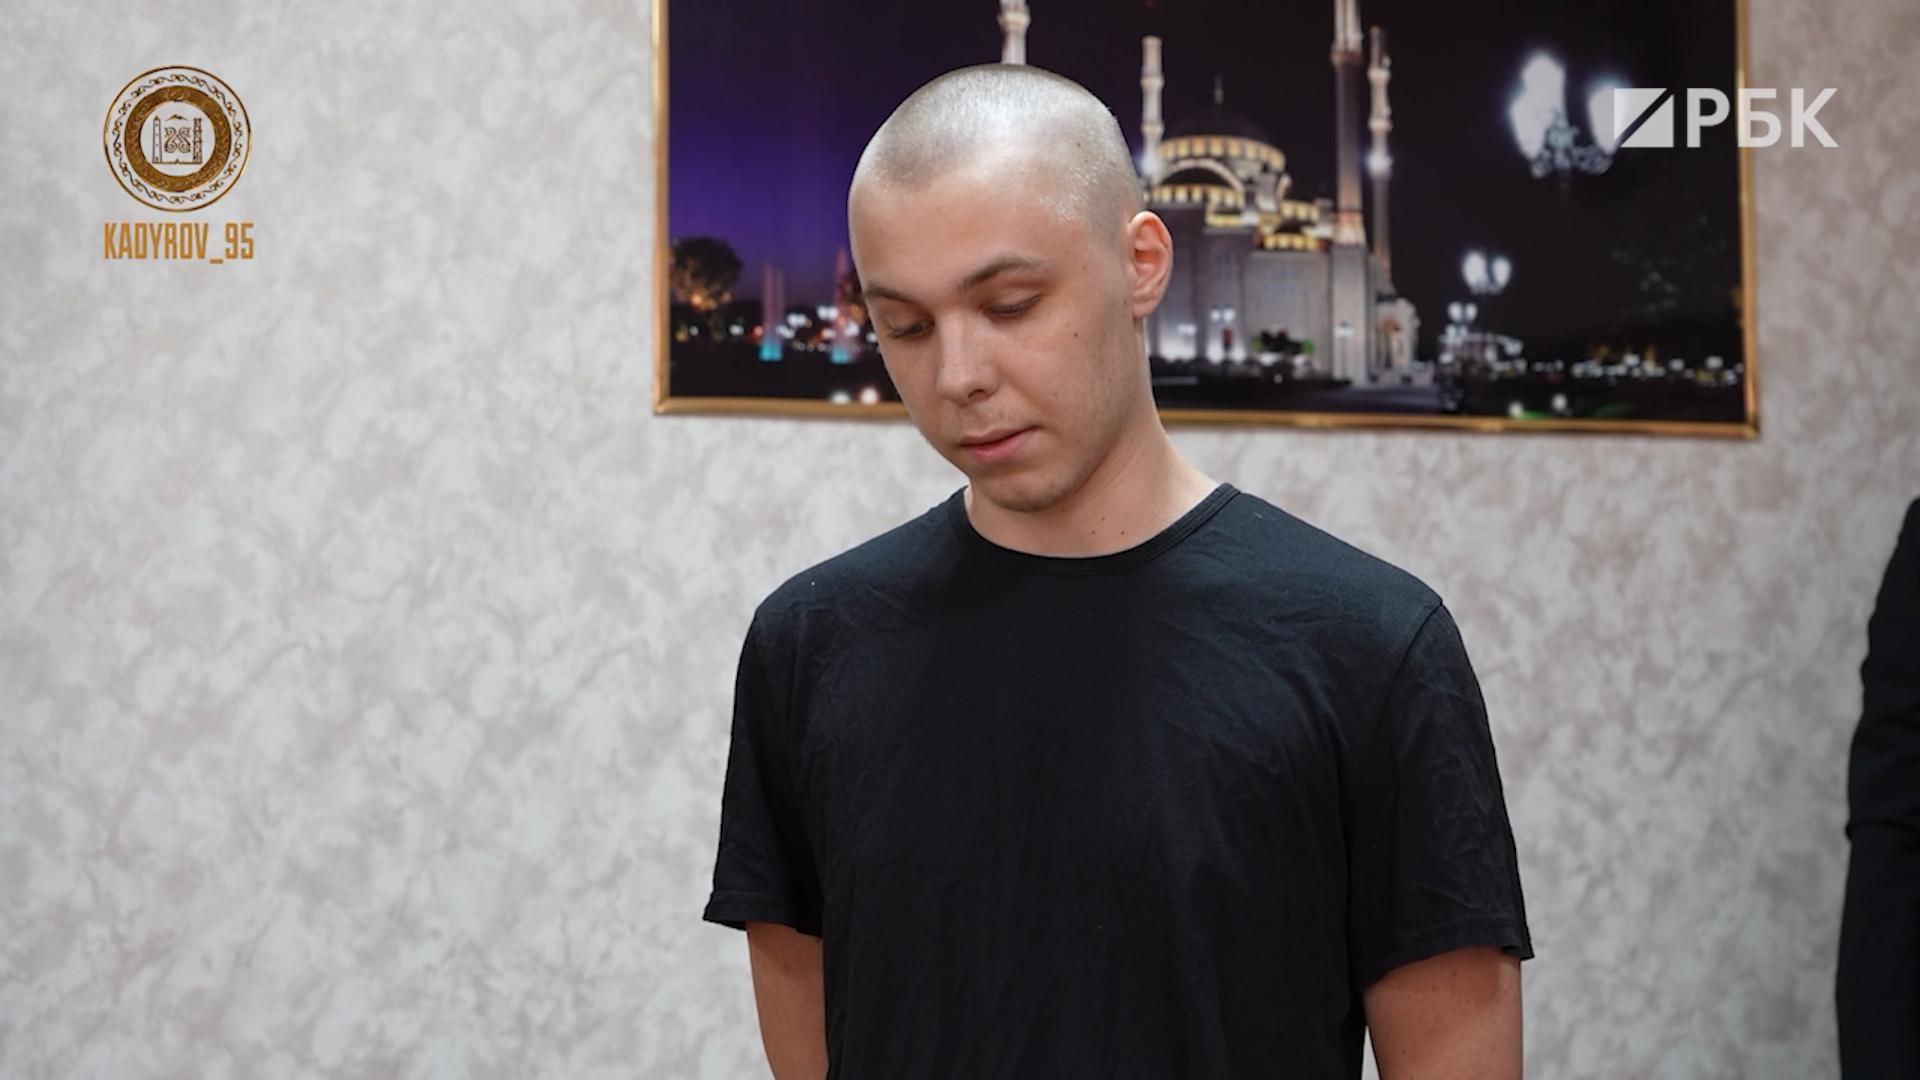 Кадыров опубликовал кадры встречи с избитым его сыном Журавелем